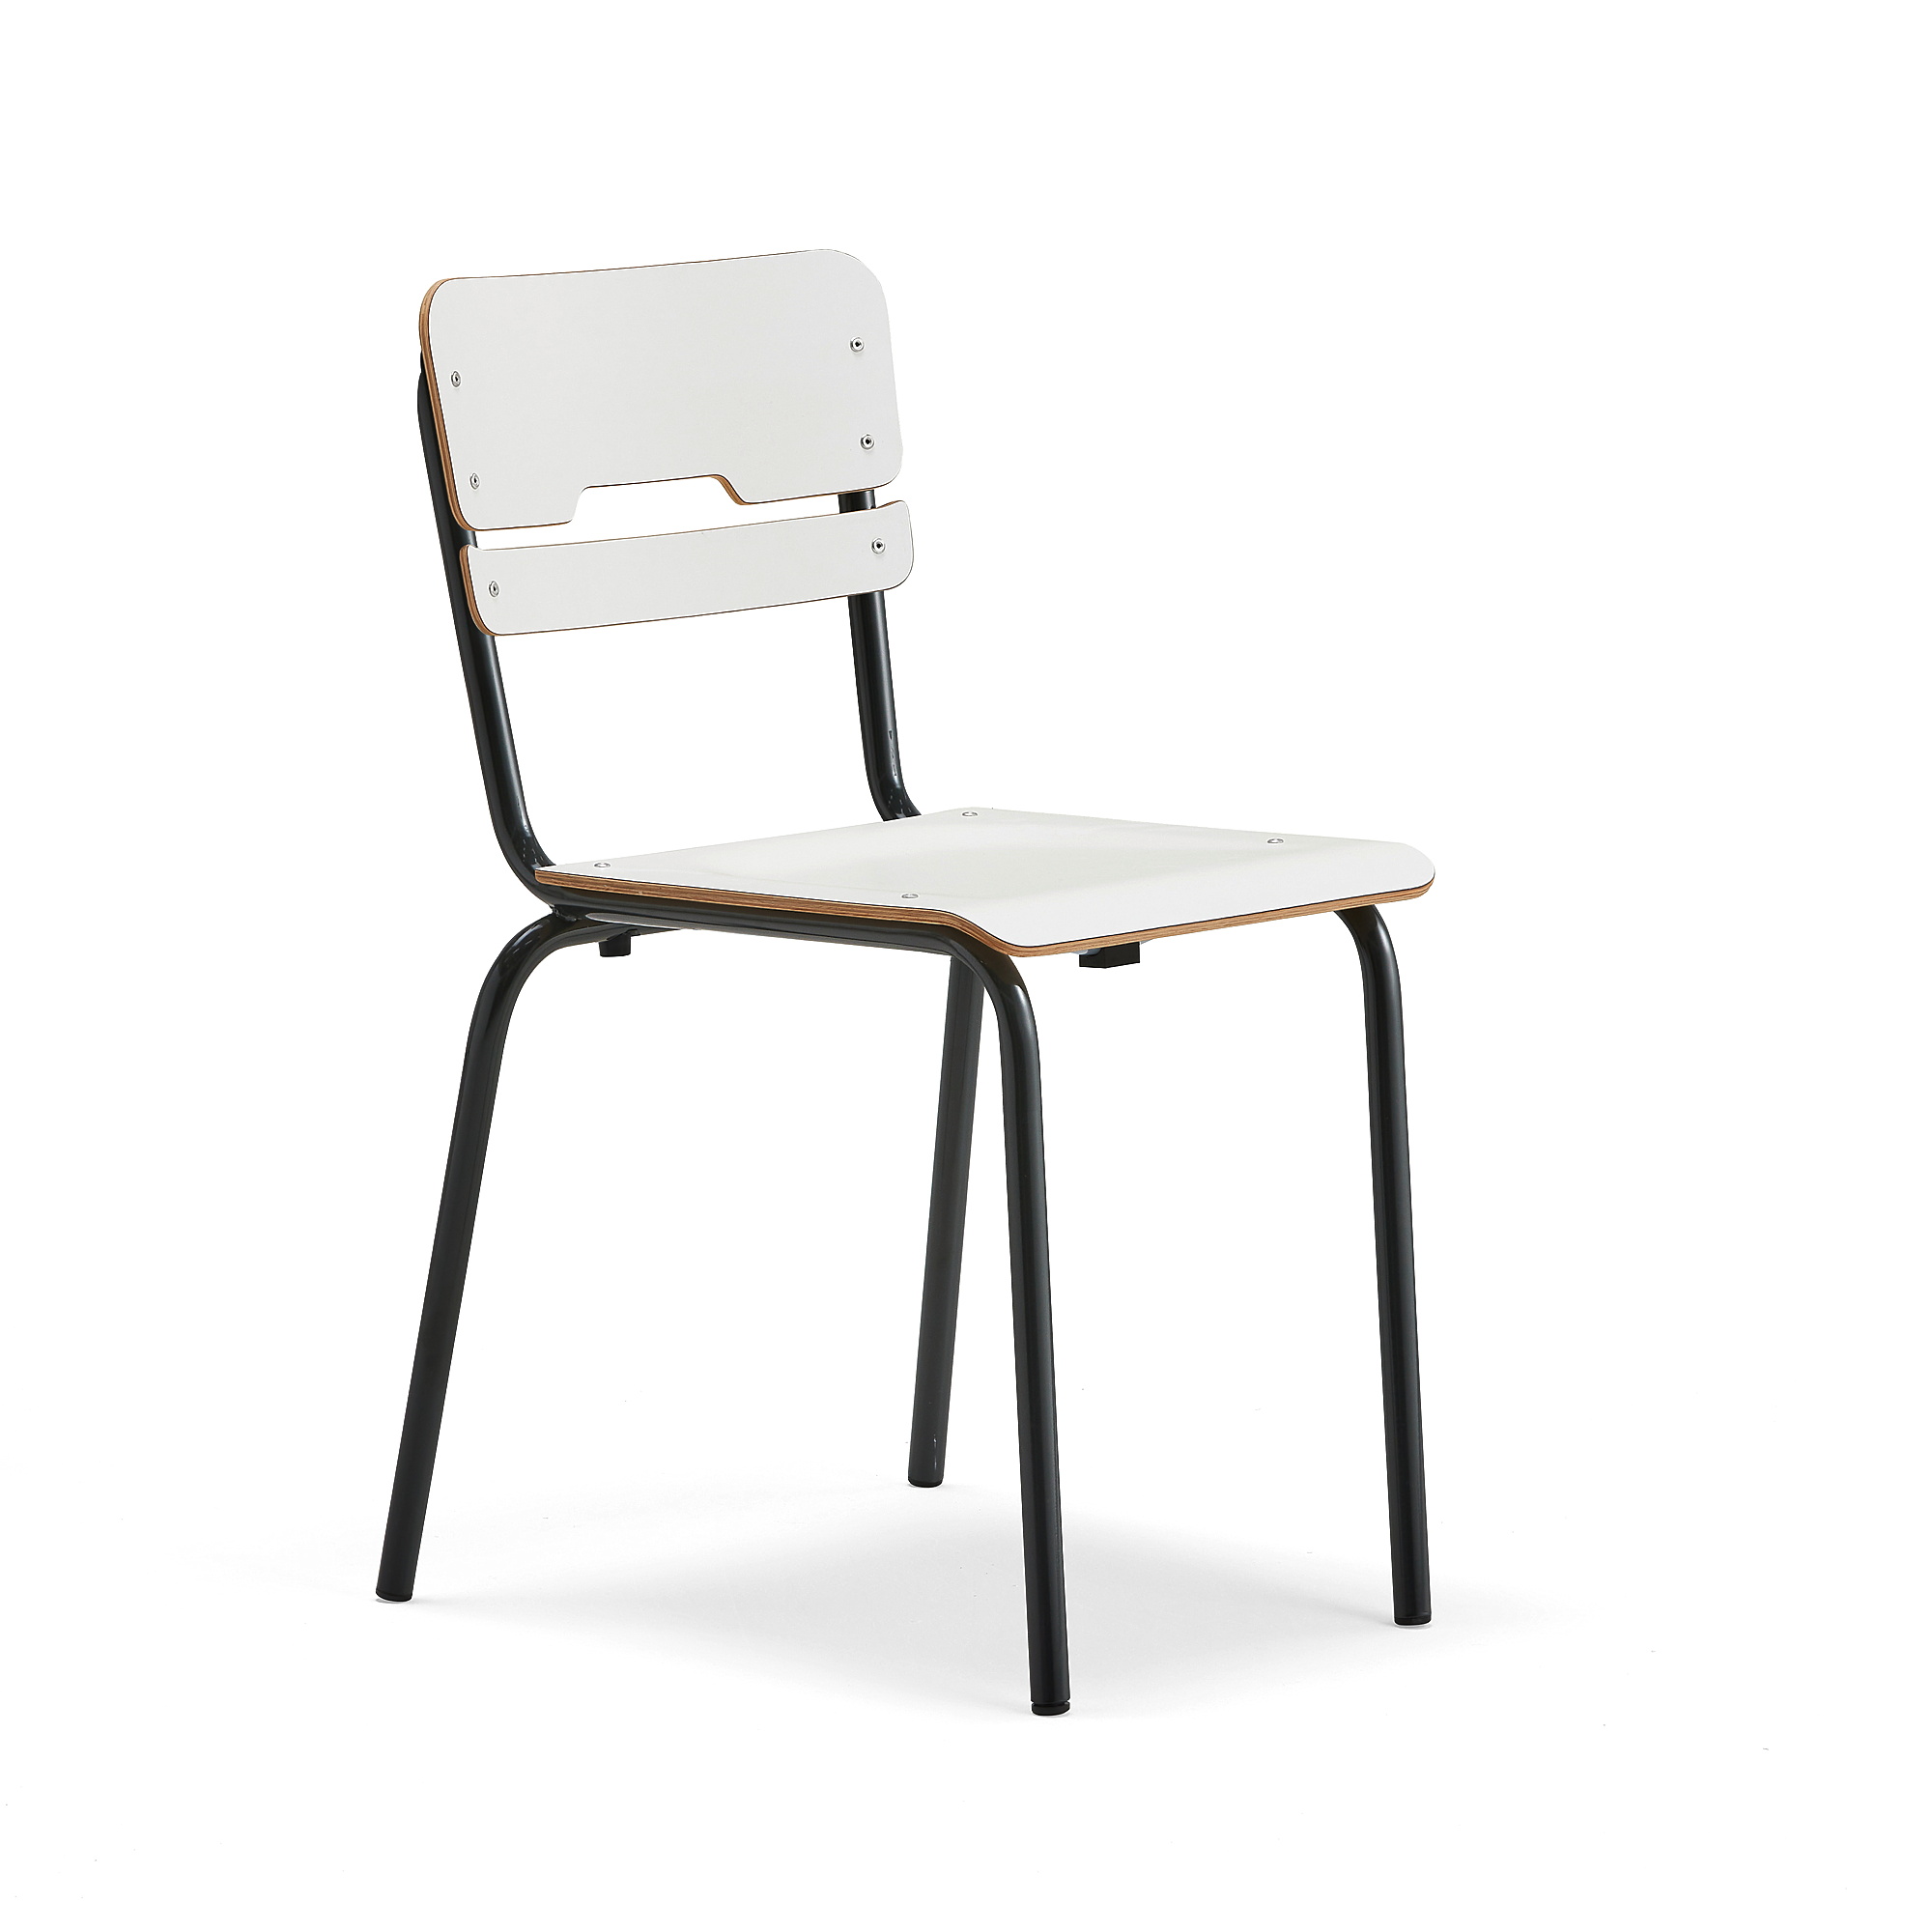 E-shop Školská stolička SCIENTIA, široké sedadlo, V 460 mm, antracit/biela